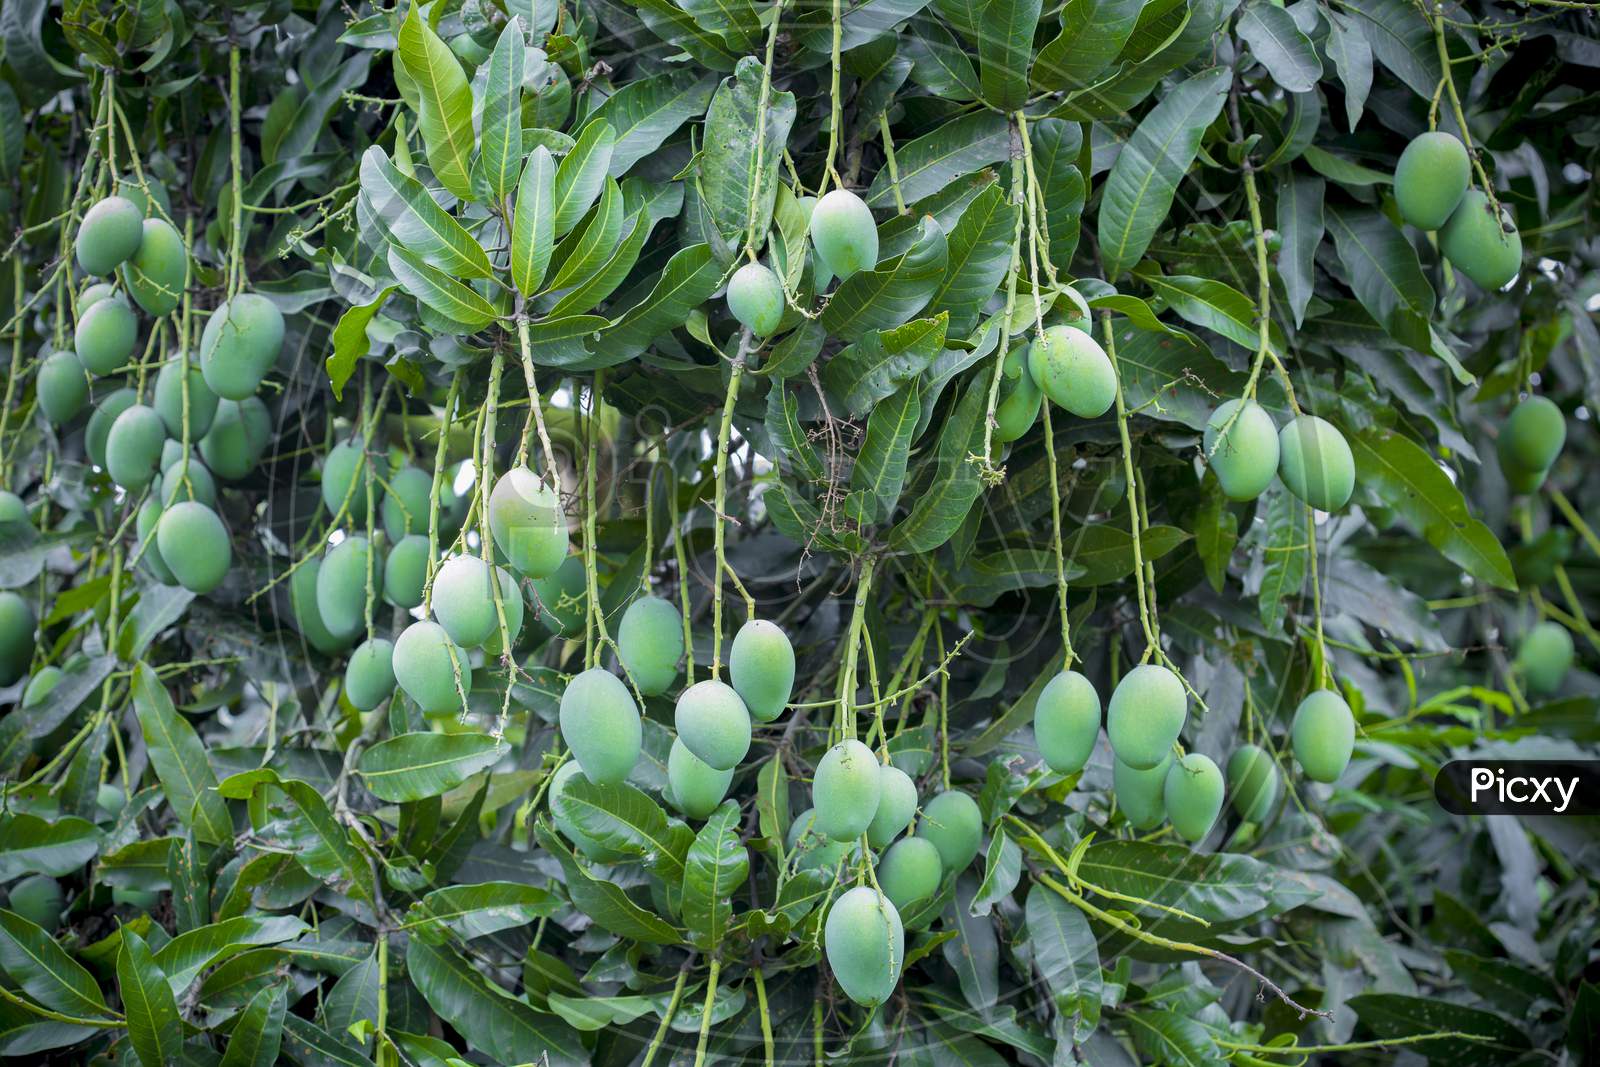 Some Mango Growing On Tree In Areas District Of Thakurgong, Bangladesh.